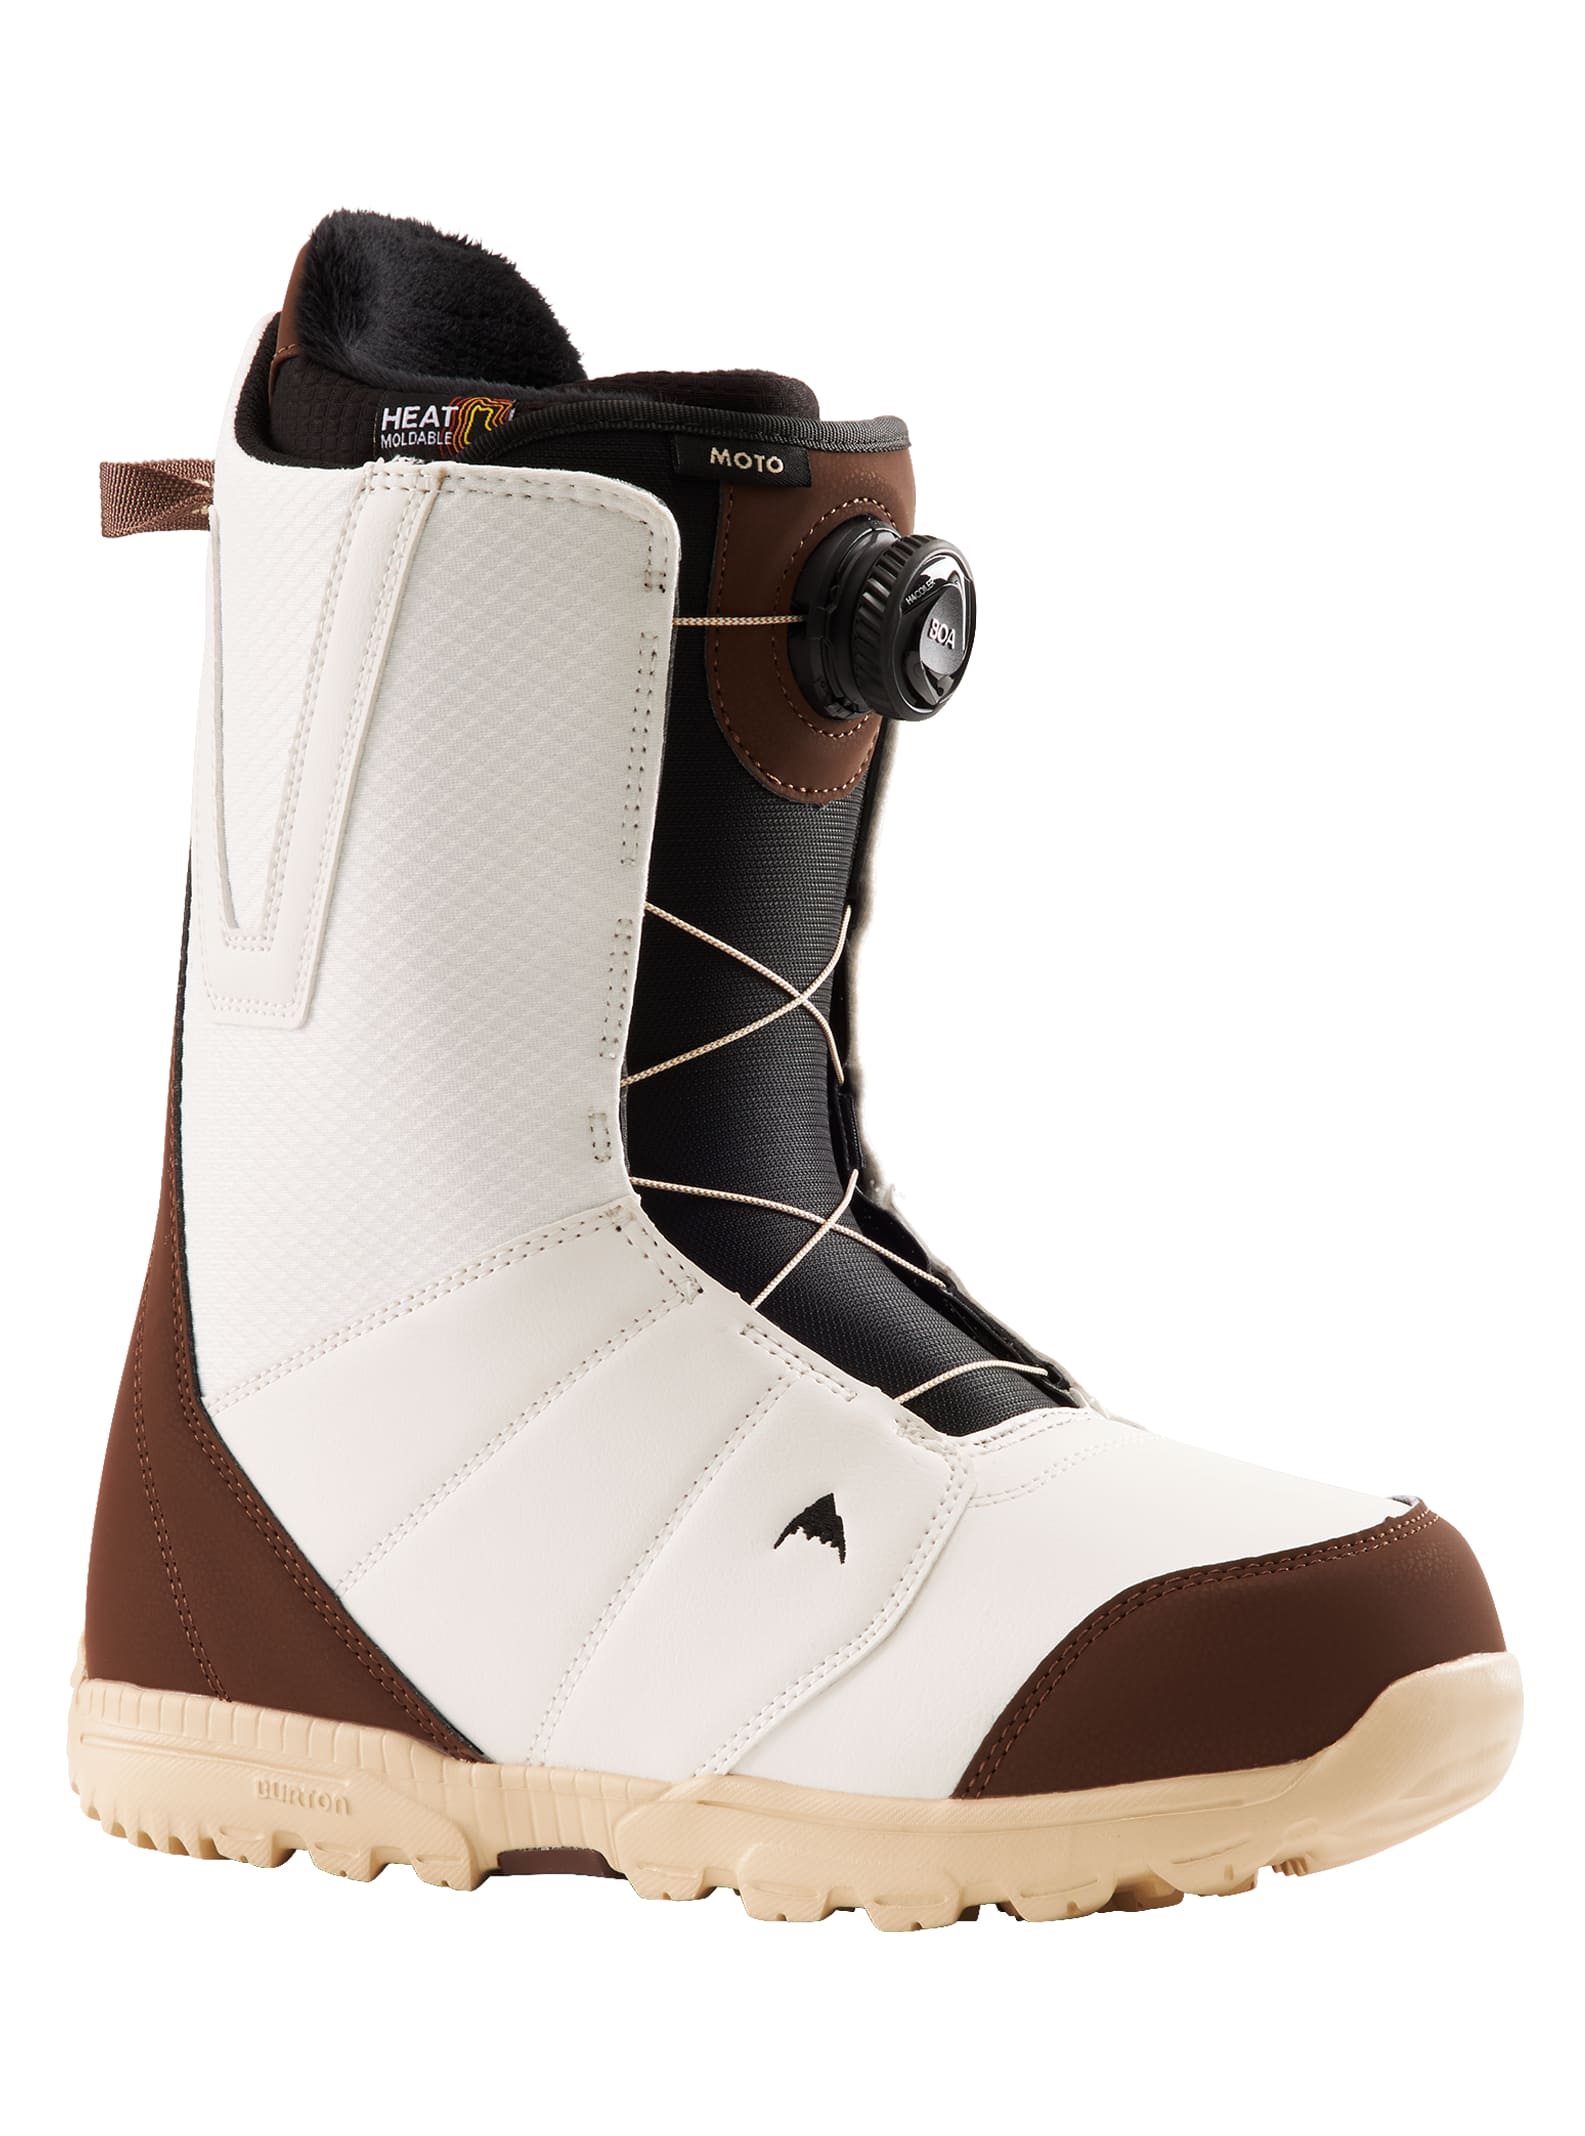 Burton Moto Boa Herren-Snowboardschuhe Snowboardboots Snowboard Boots NEU 